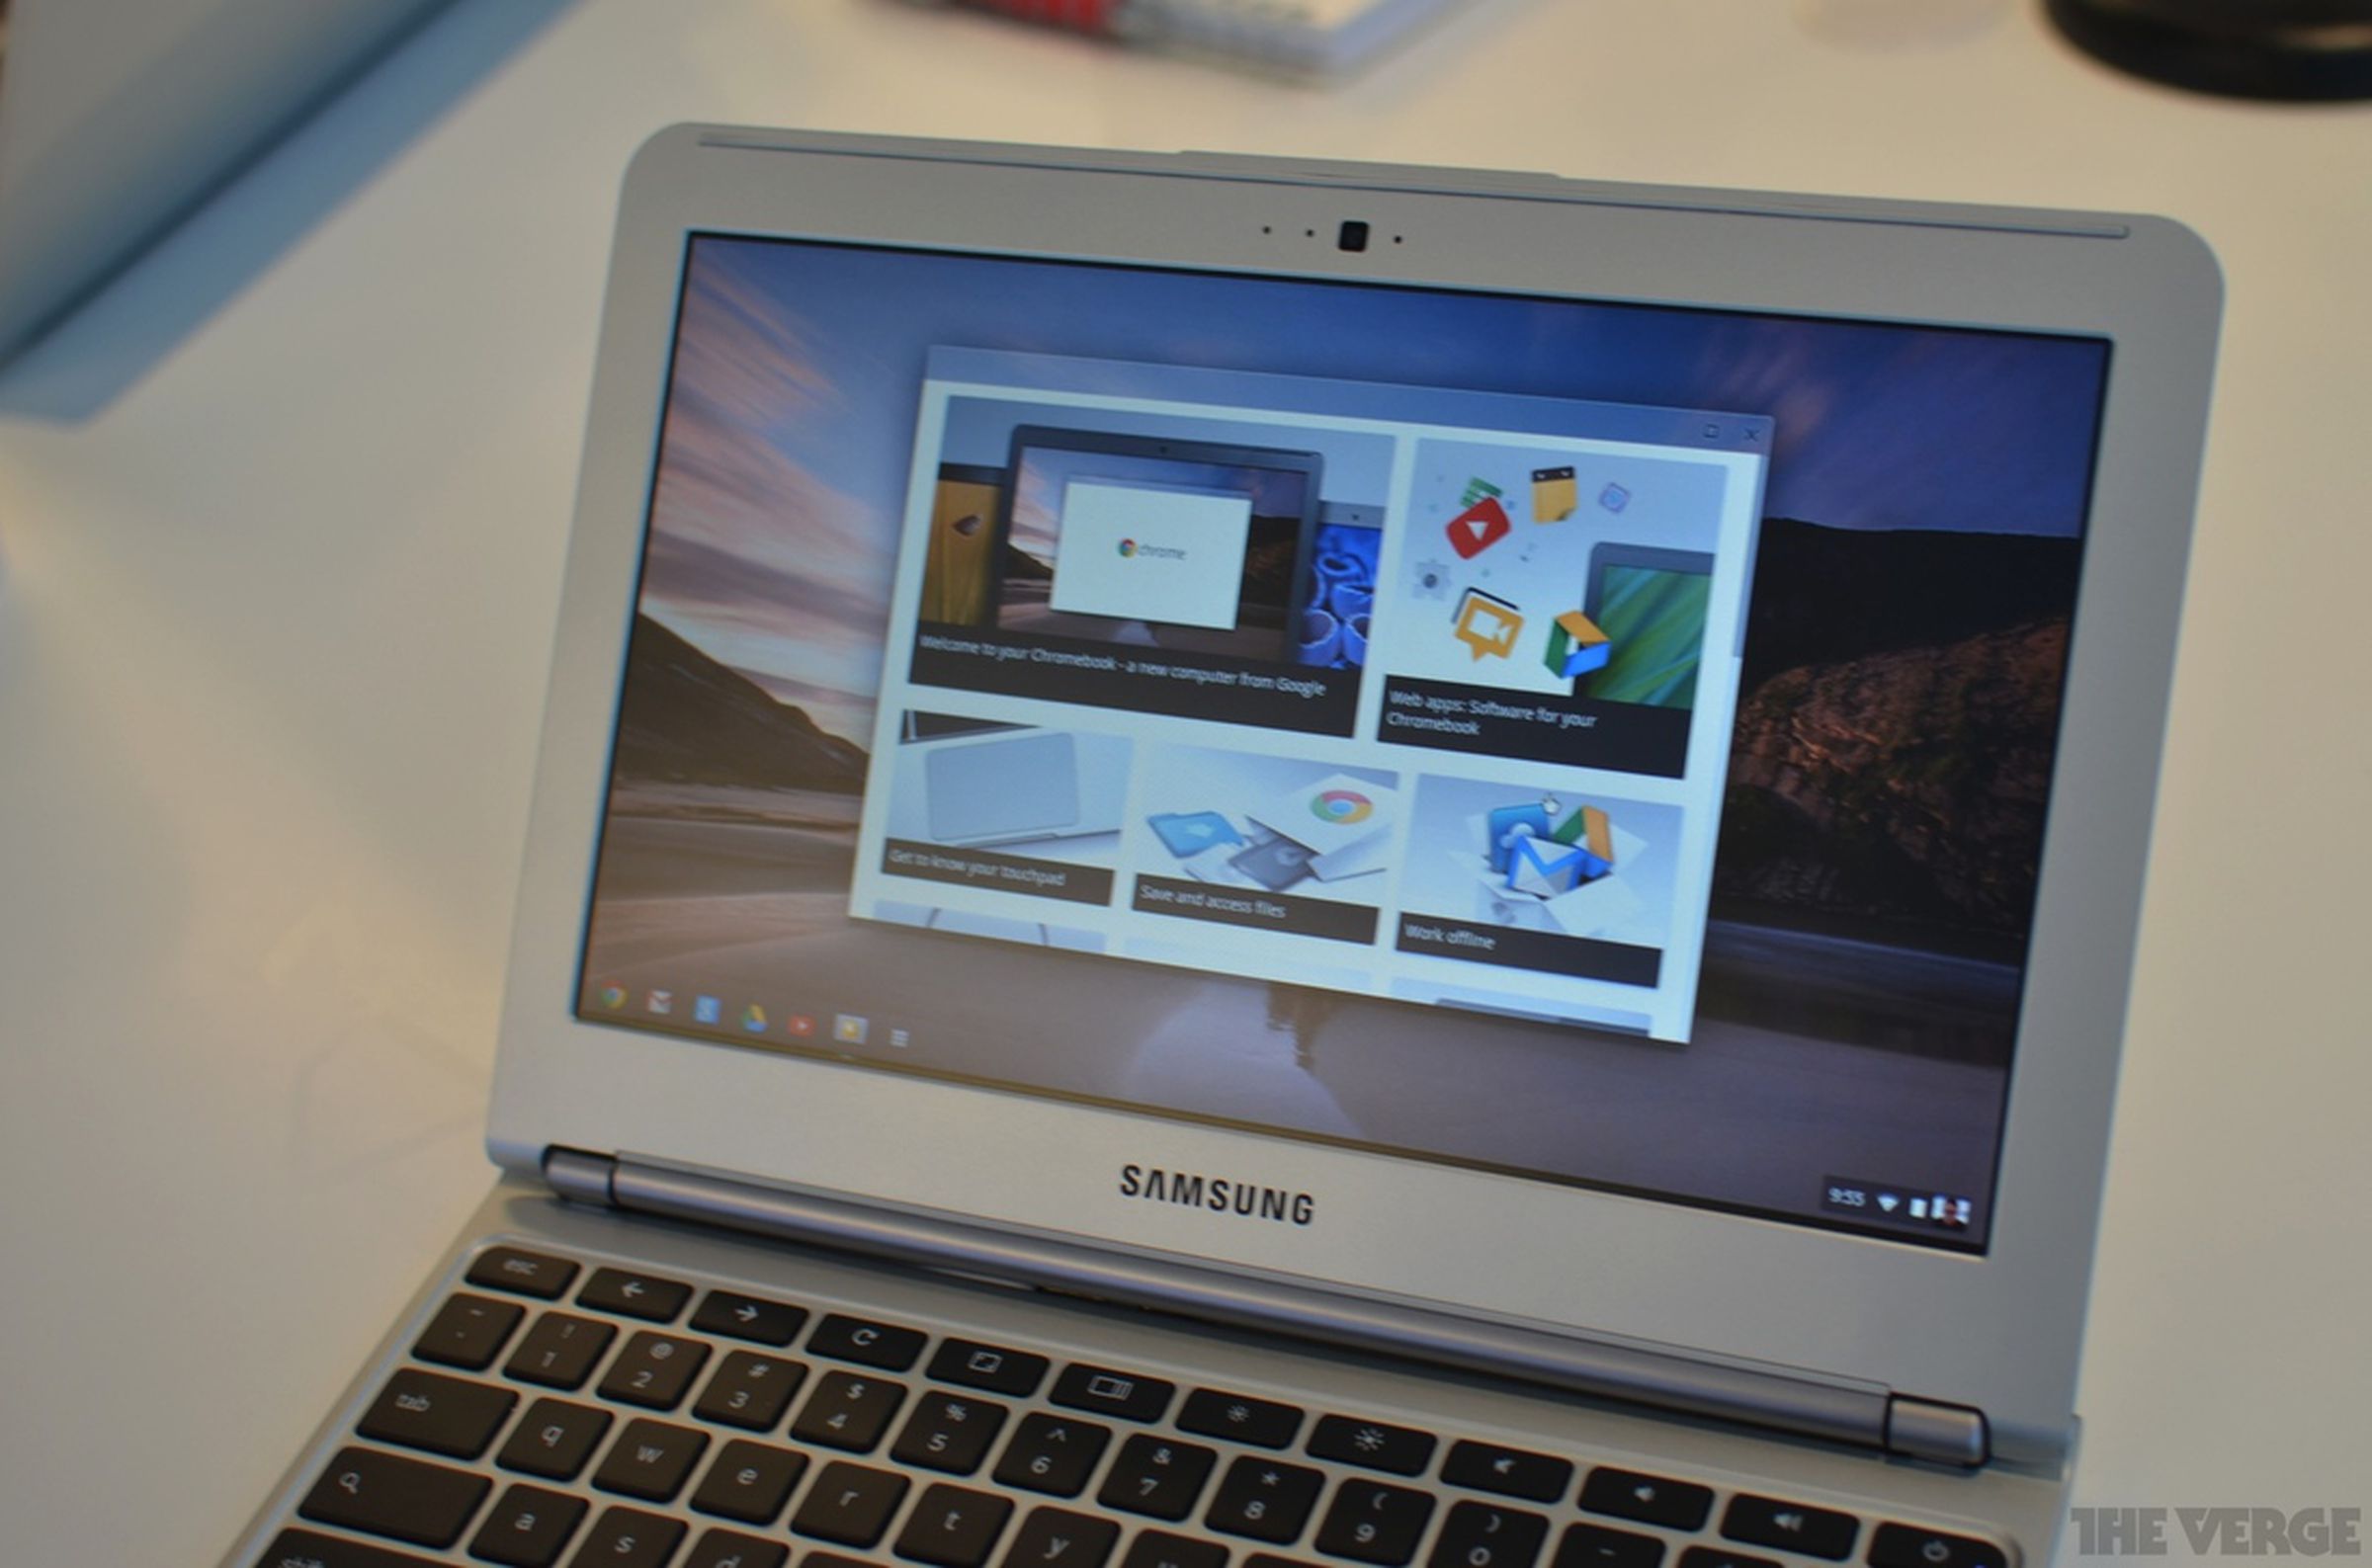 New Samsung Chromebook hands-on photos